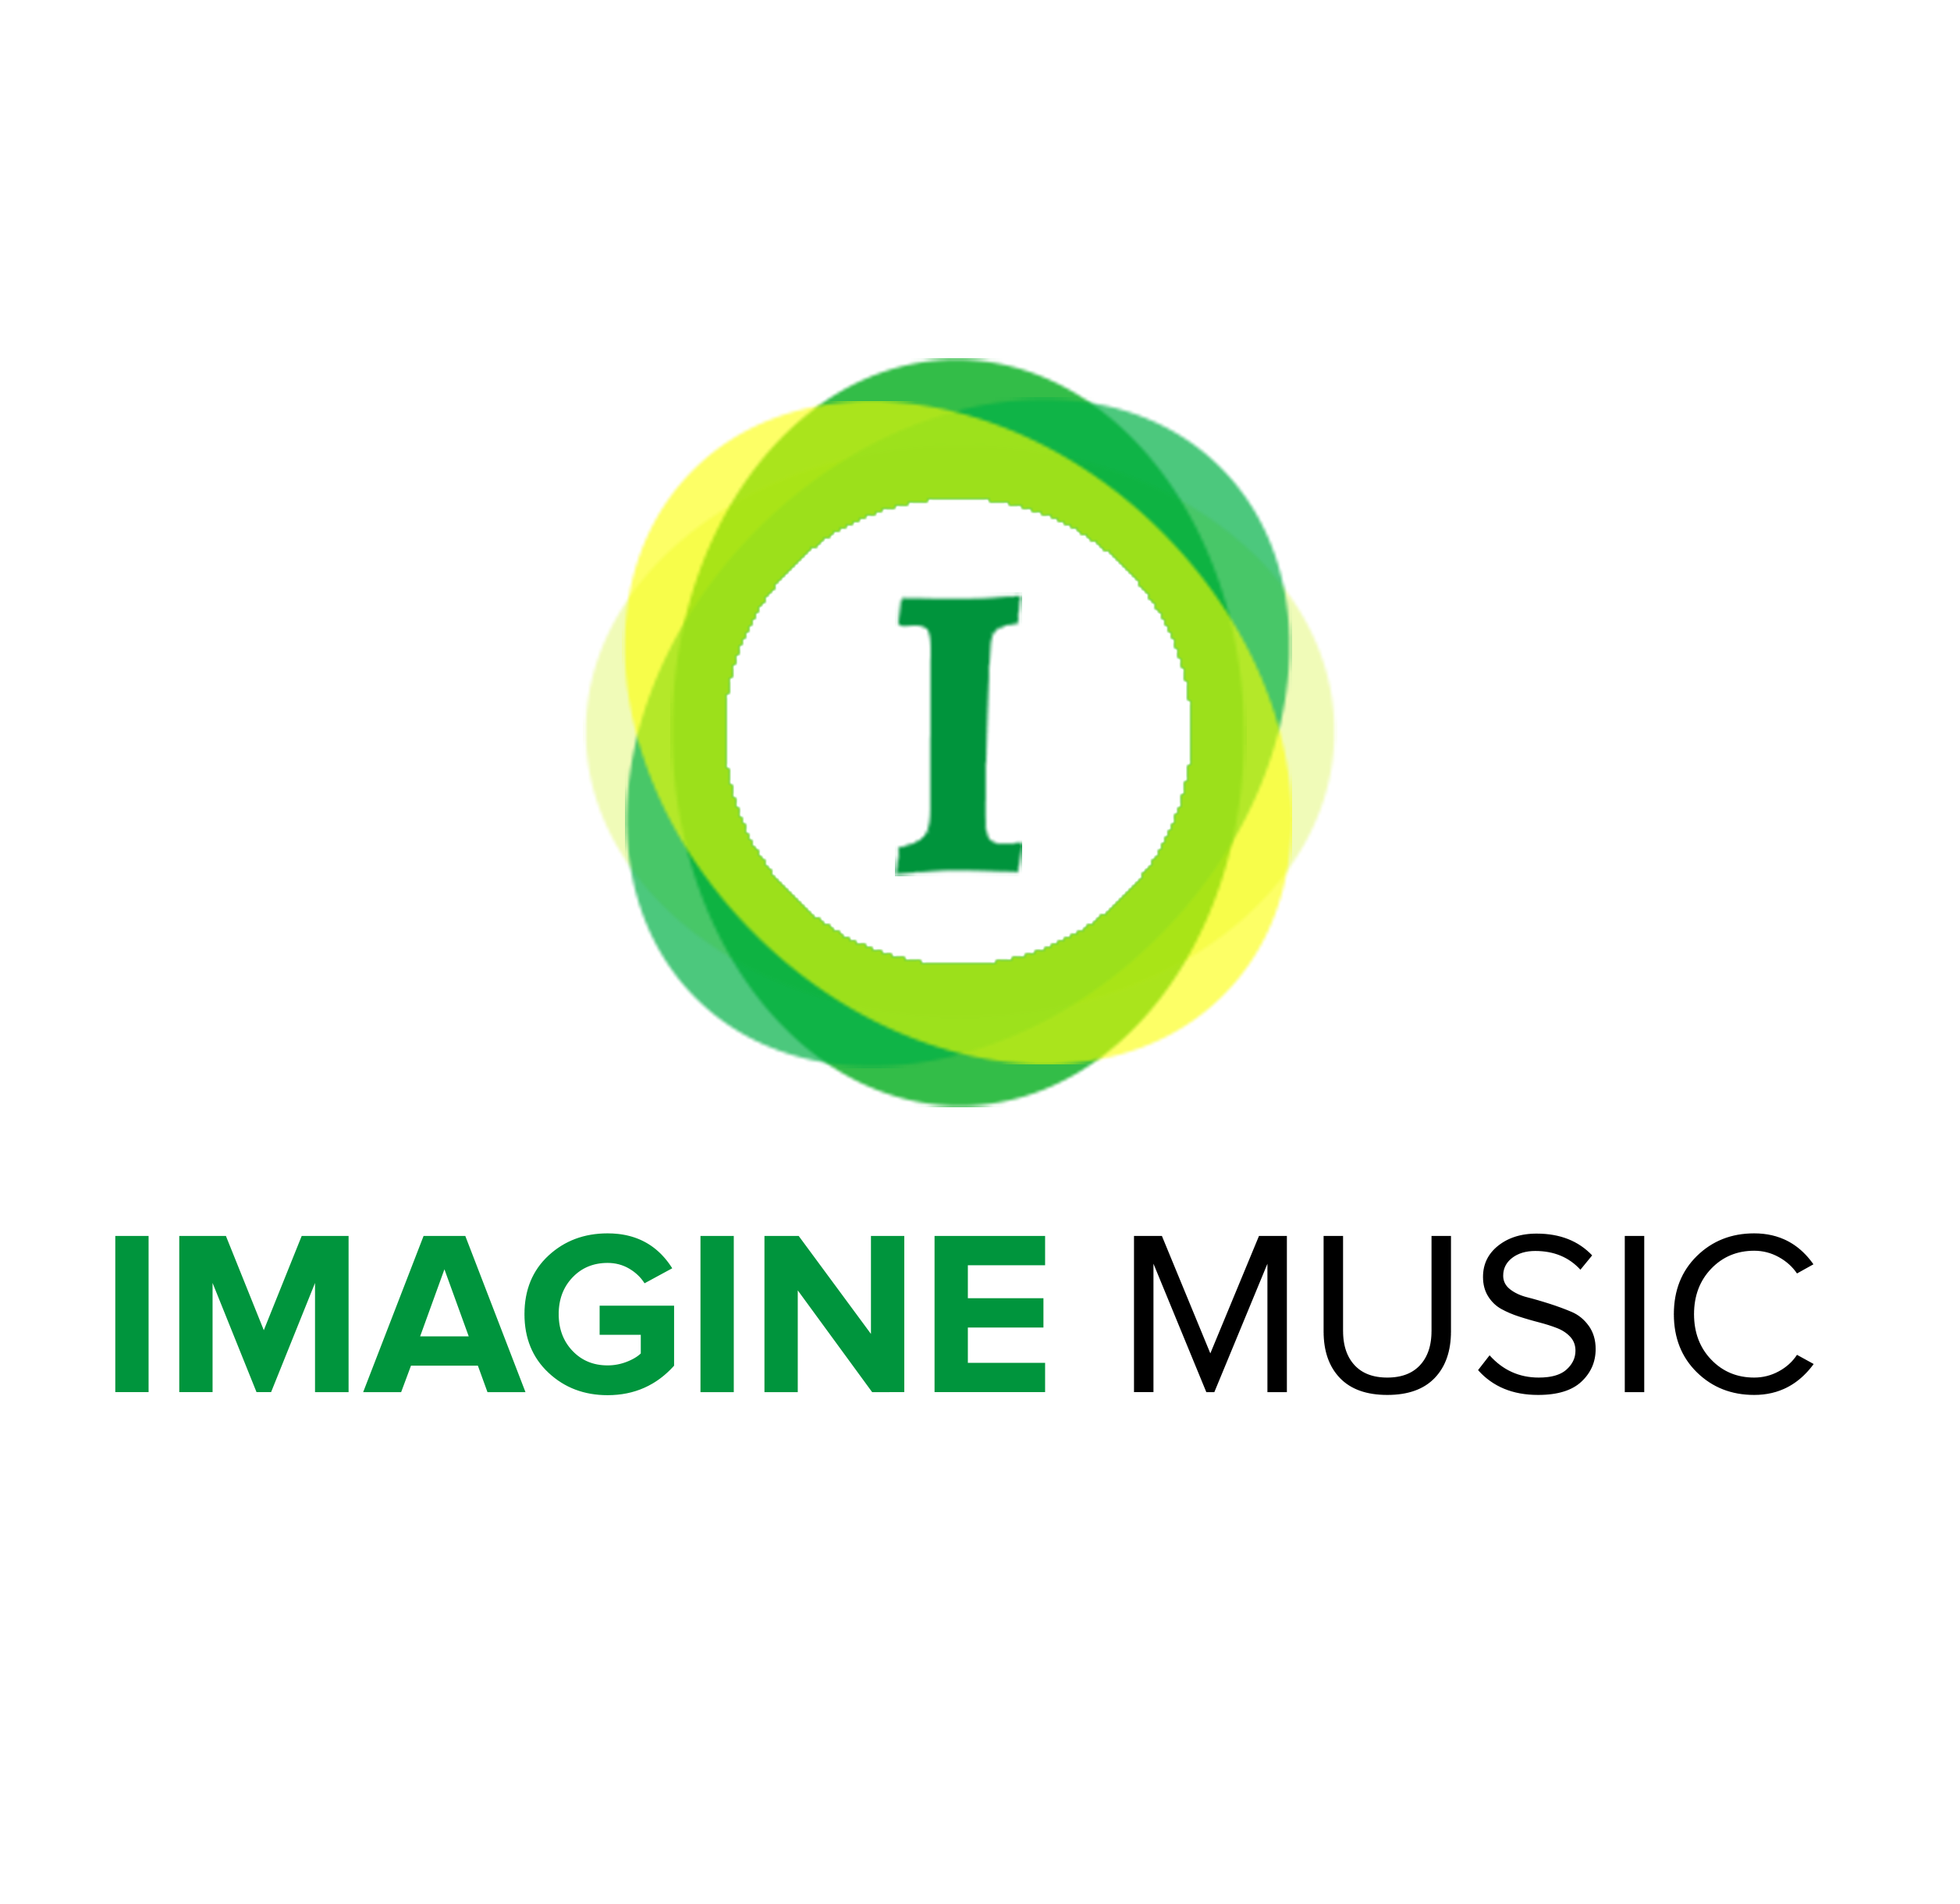 IMAGINE MUSIC